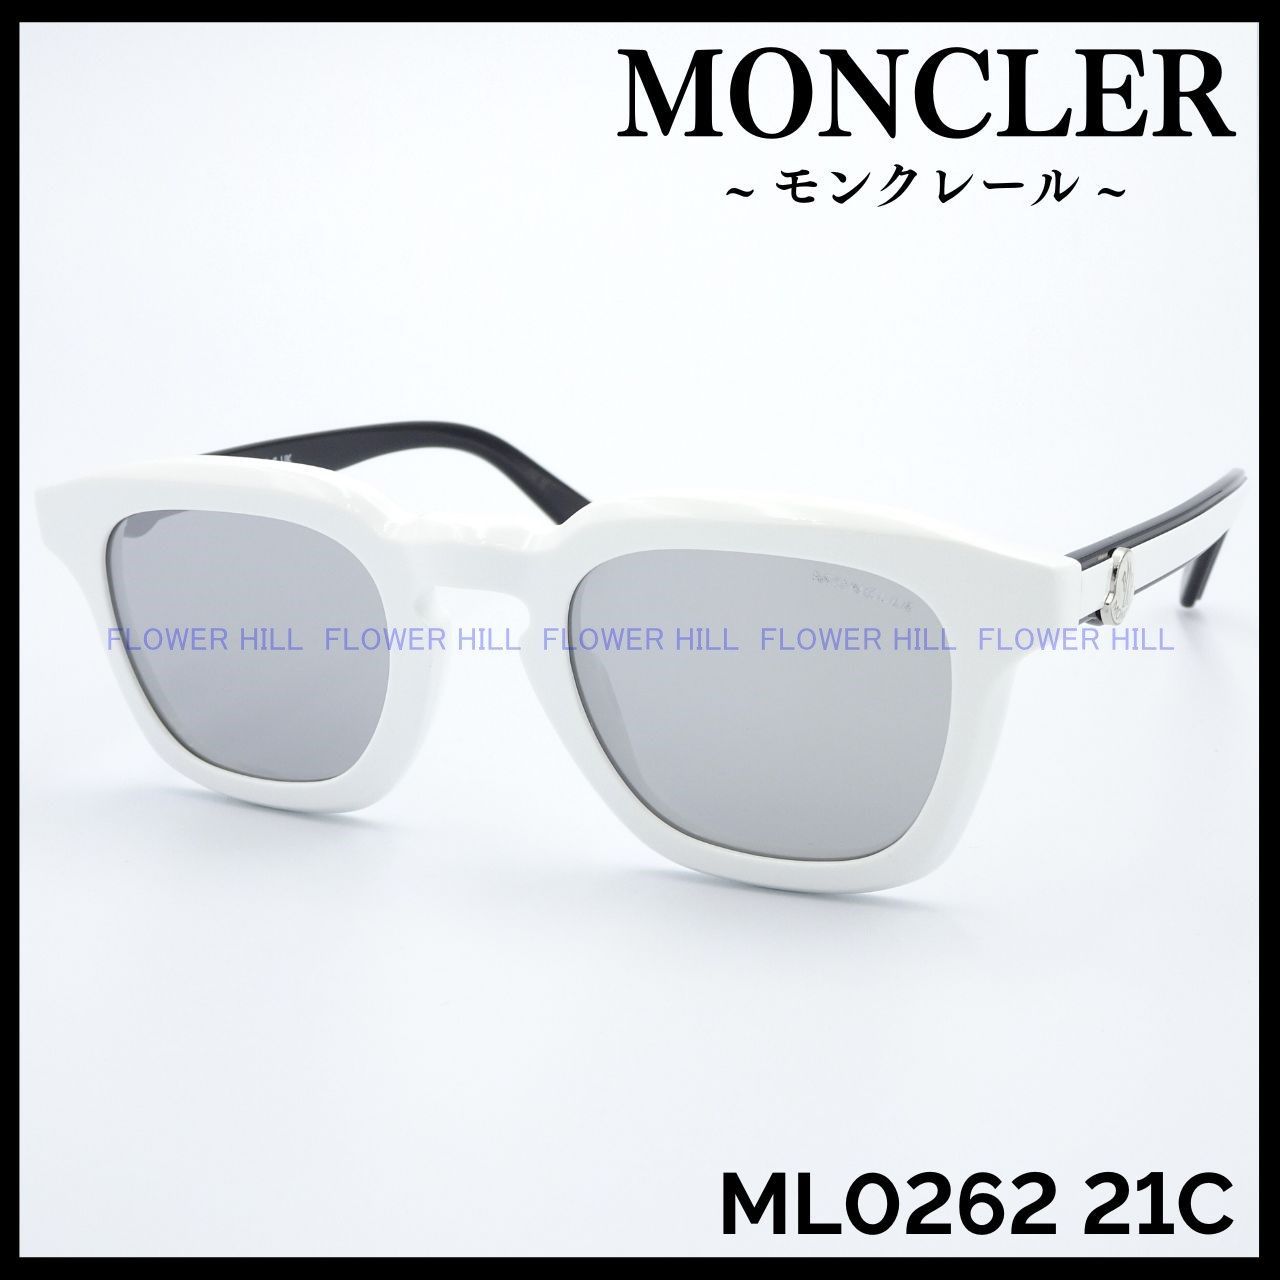 FlowerHillモンクレール サングラス 高級 ホワイト・ブラック ML0262 21C